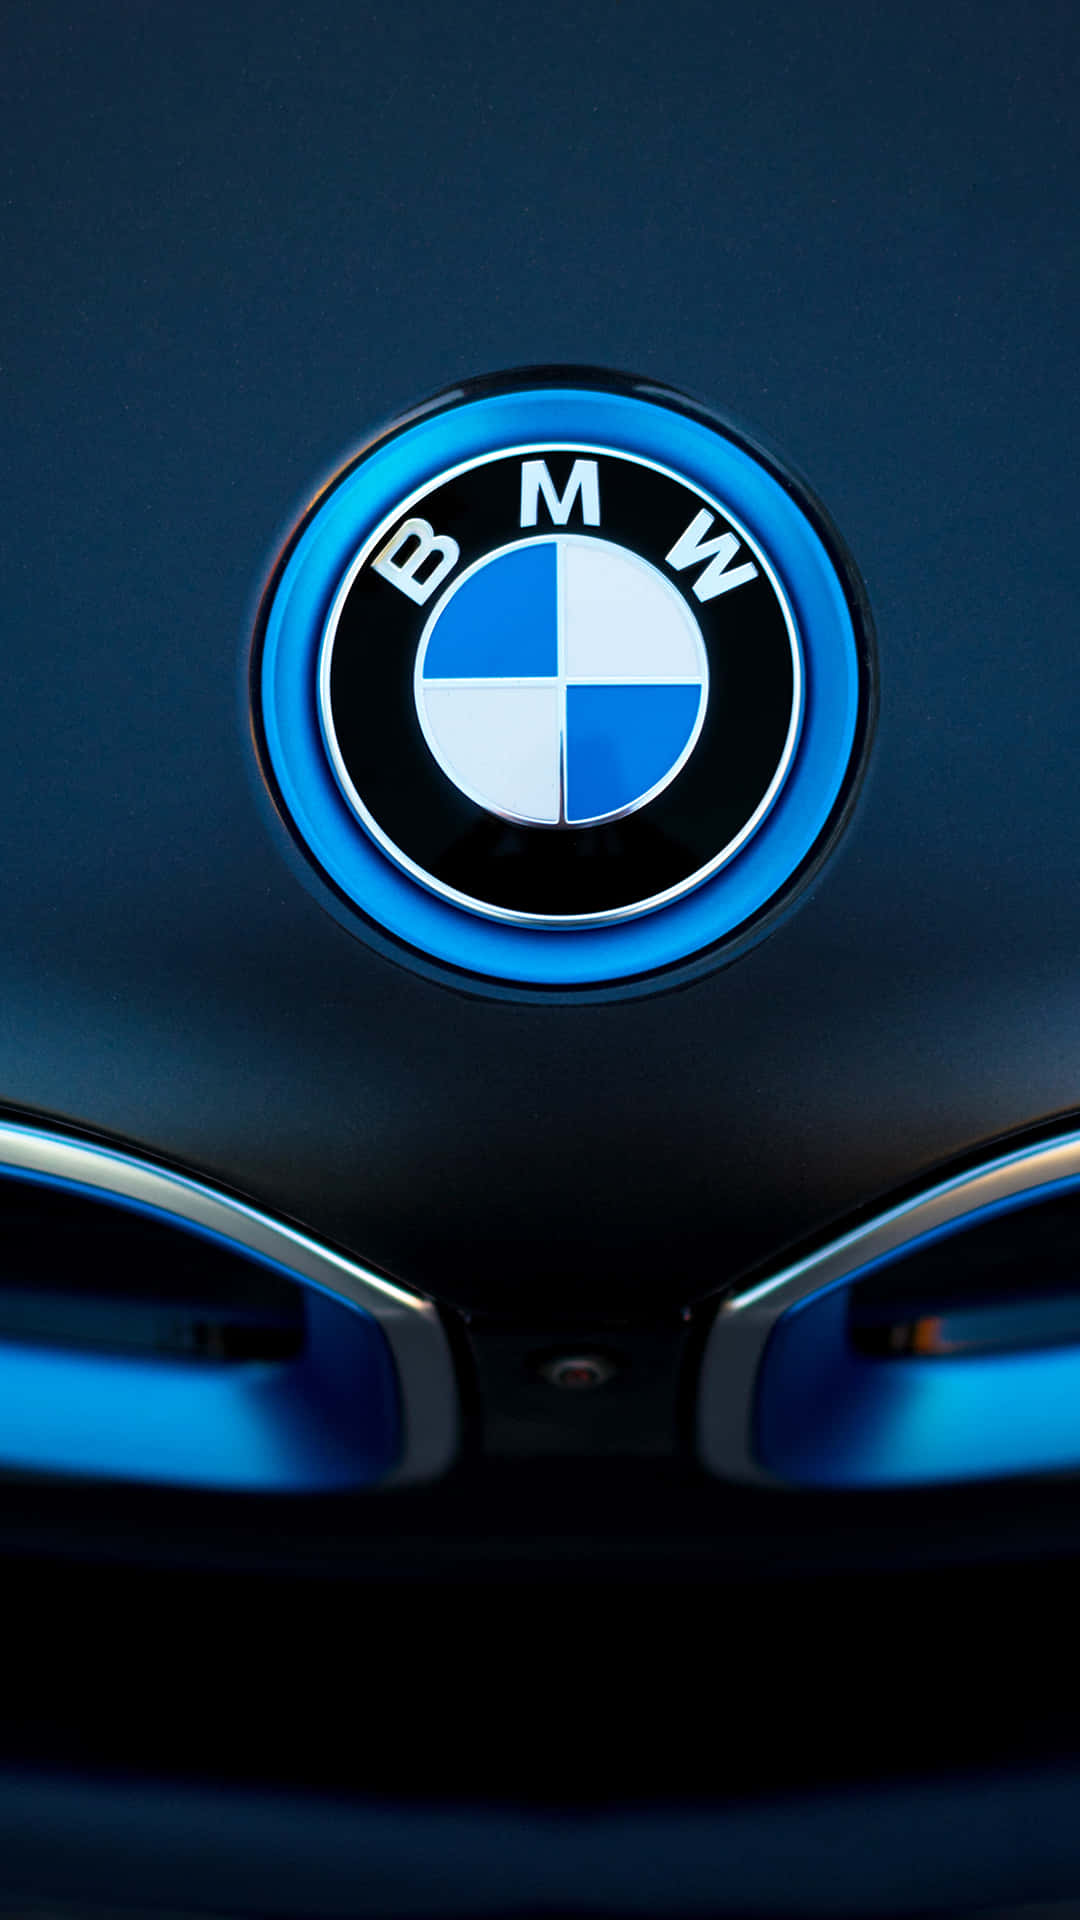 BMW'er gendesignet med Android-system Wallpaper